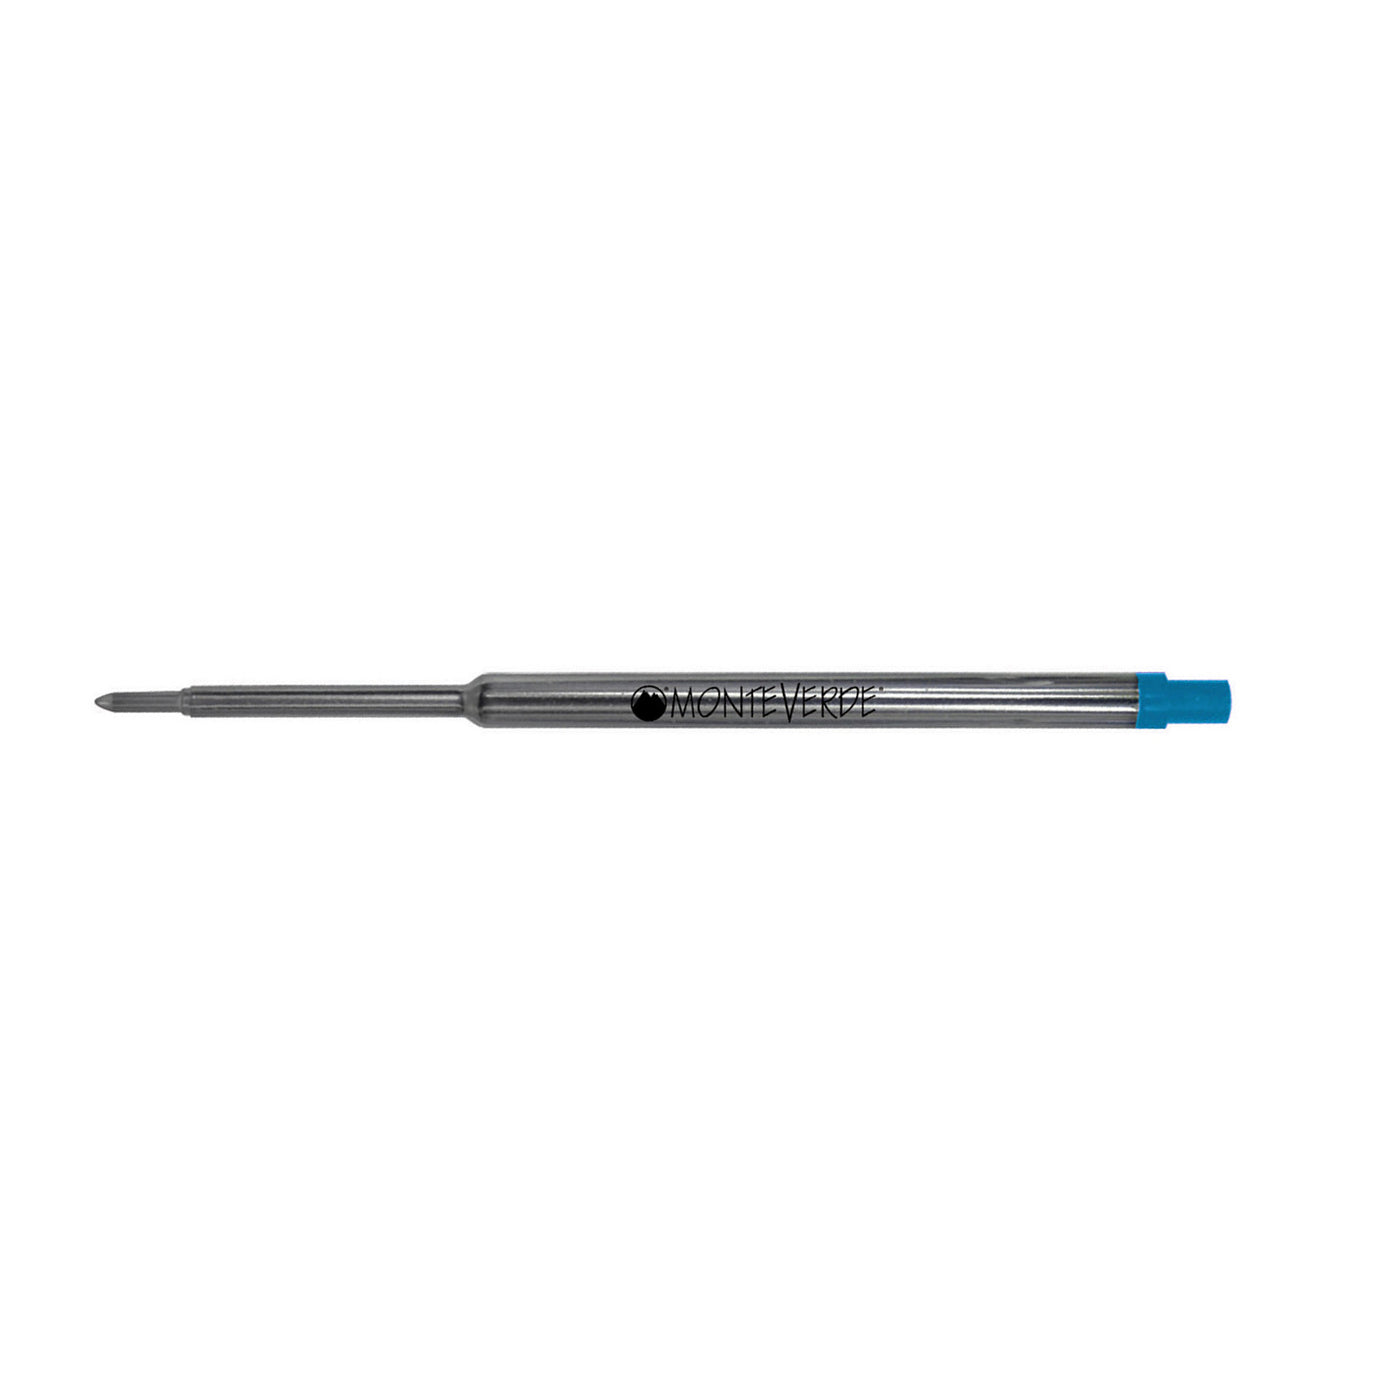 Monteverde Ball Pen Refill for Waterman - Medium - Turquoise - Pack of 2 3